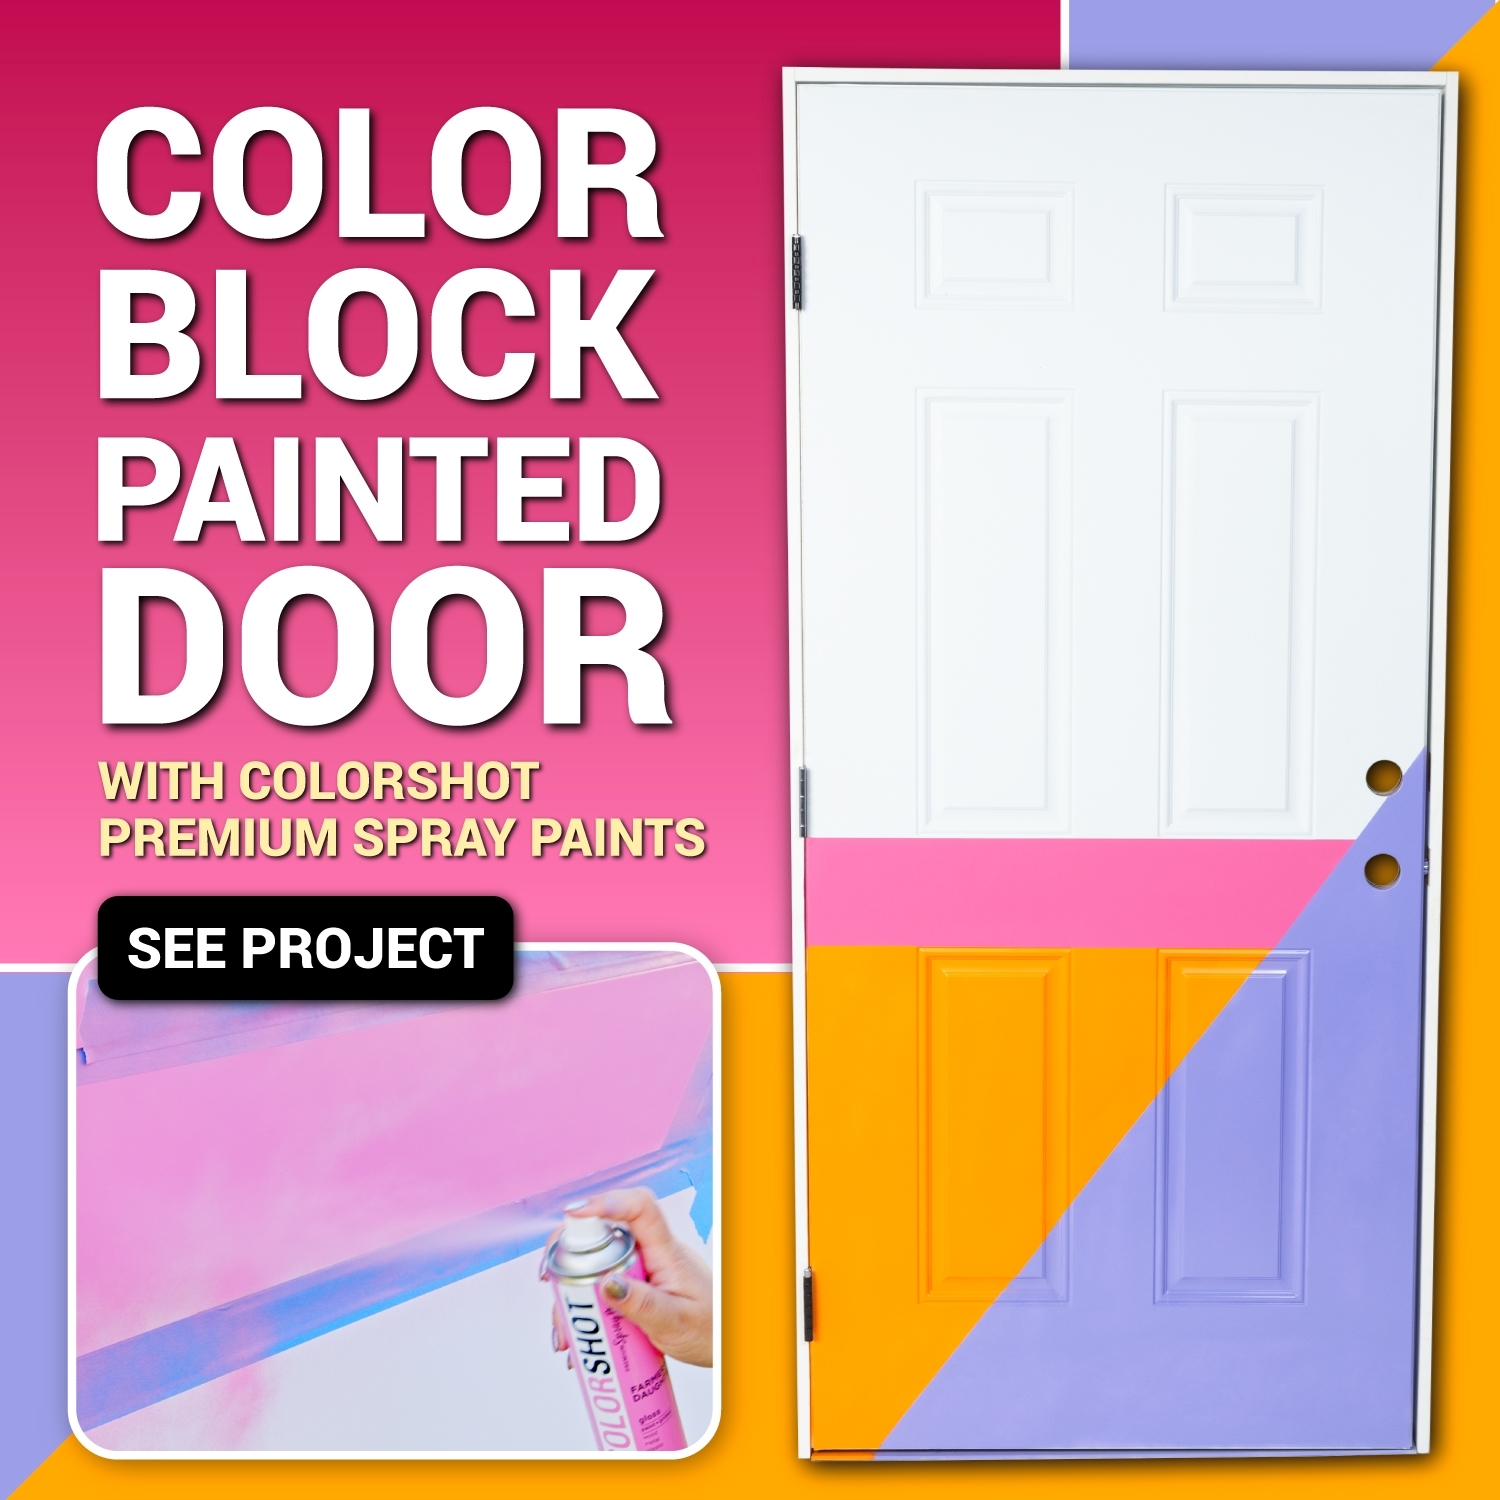 Colorblock painted door